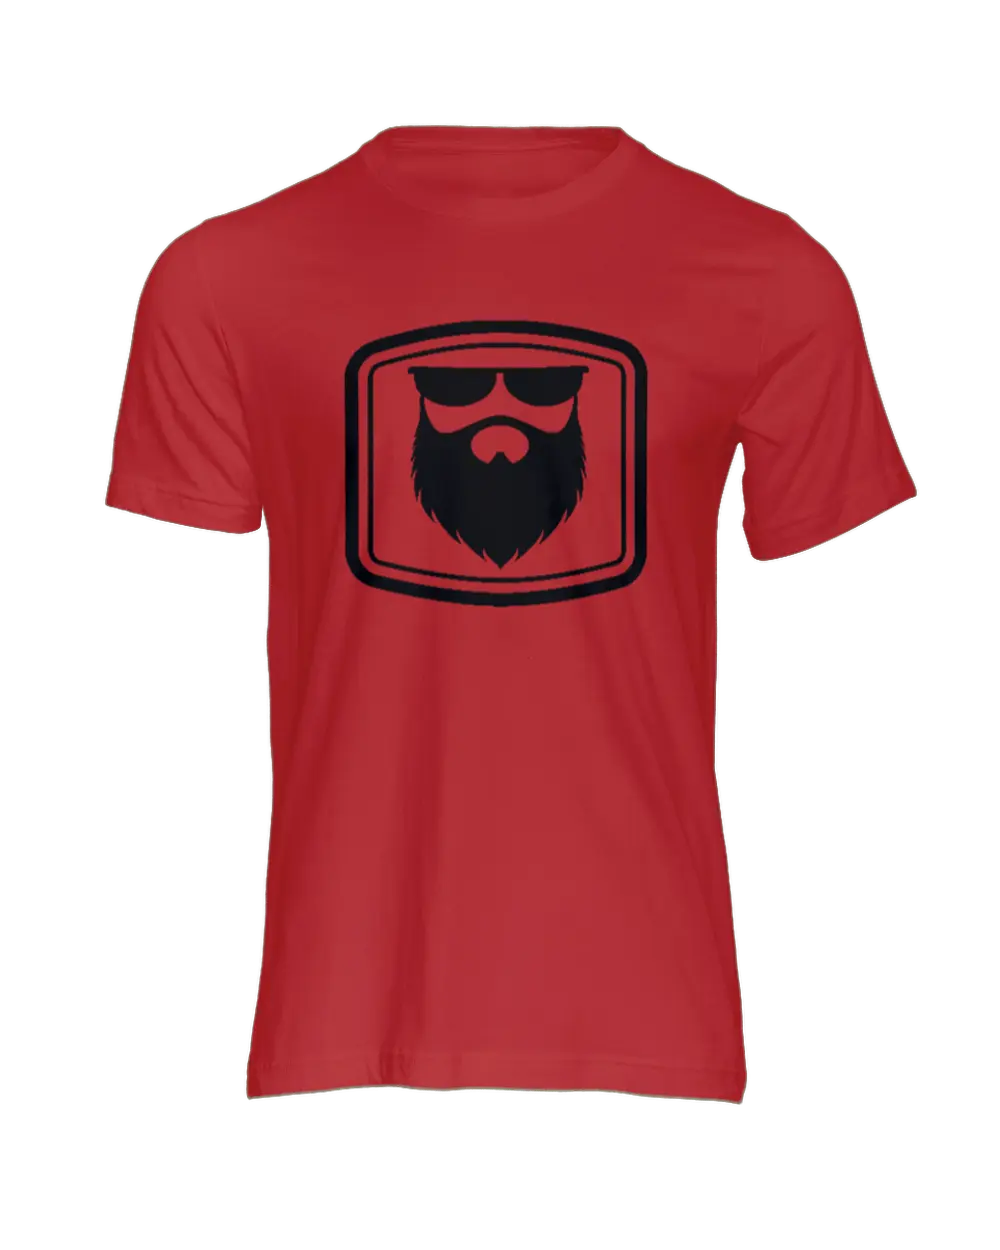 THE OG BEARD 2.0 Red Men's T-Shirt|T-Shirt